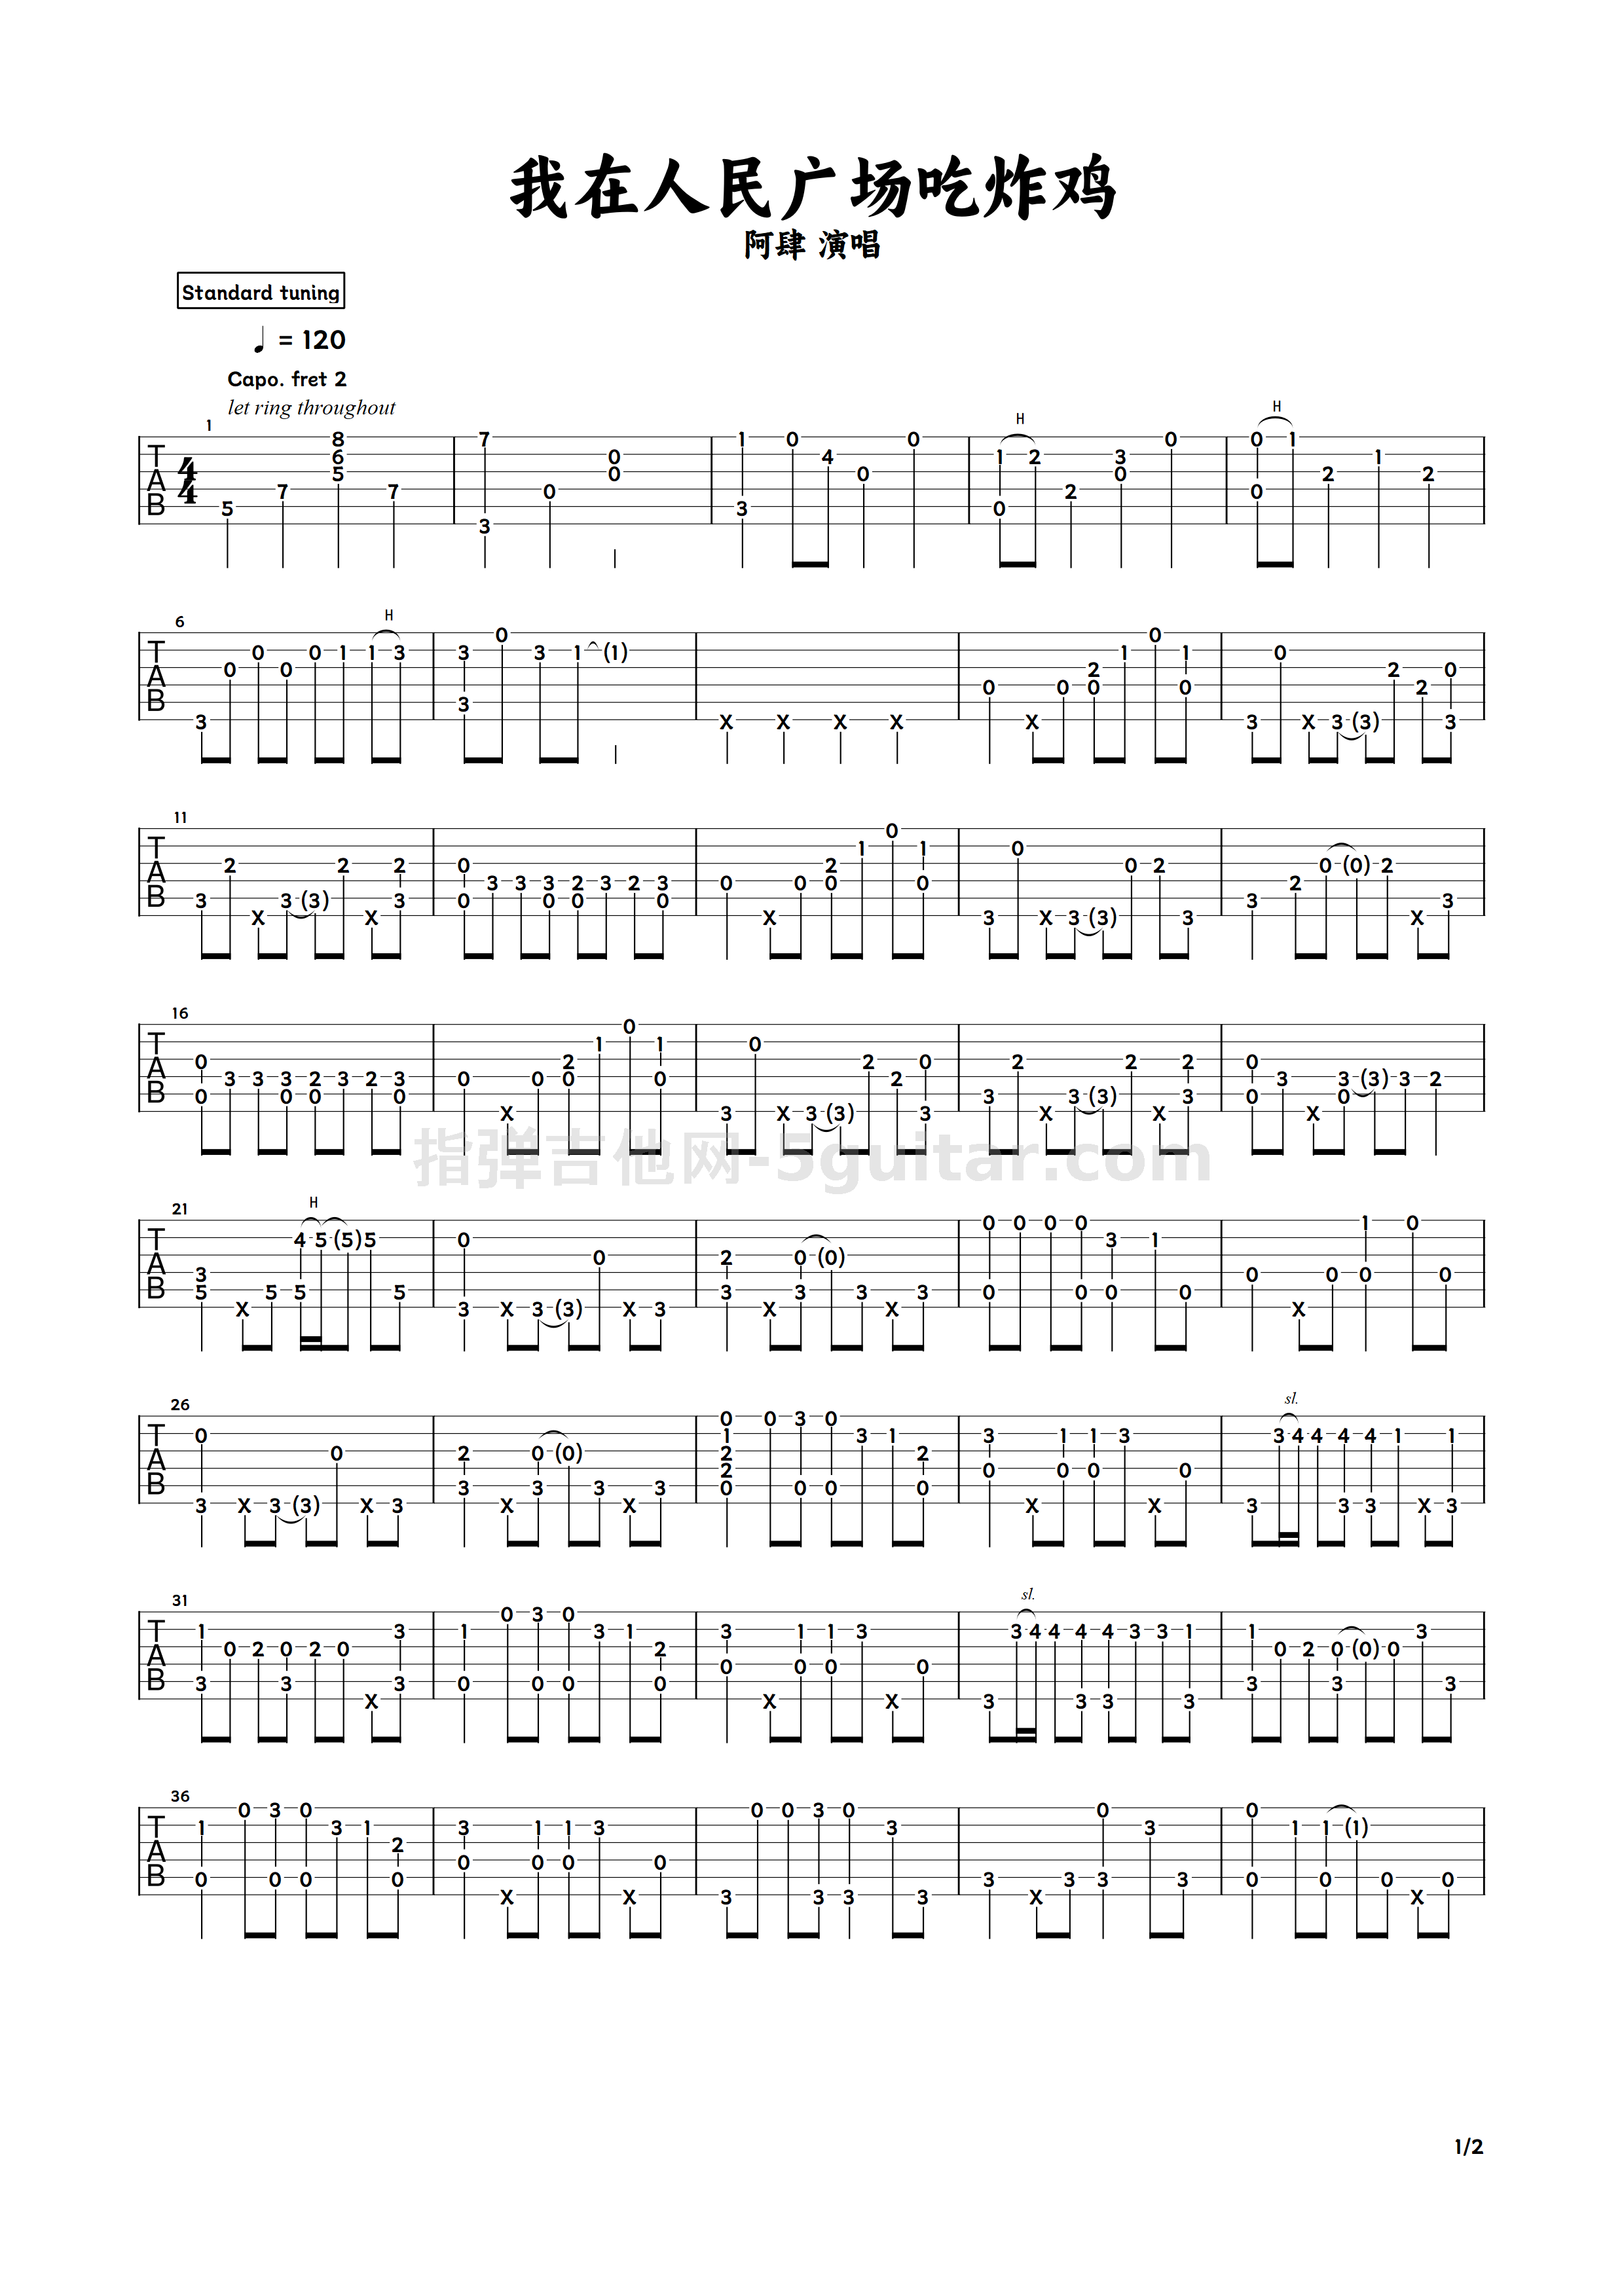 我在人民广场吃炸鸡-情圣插曲-抖音版本双手简谱预览1-钢琴谱文件（五线谱、双手简谱、数字谱、Midi、PDF）免费下载